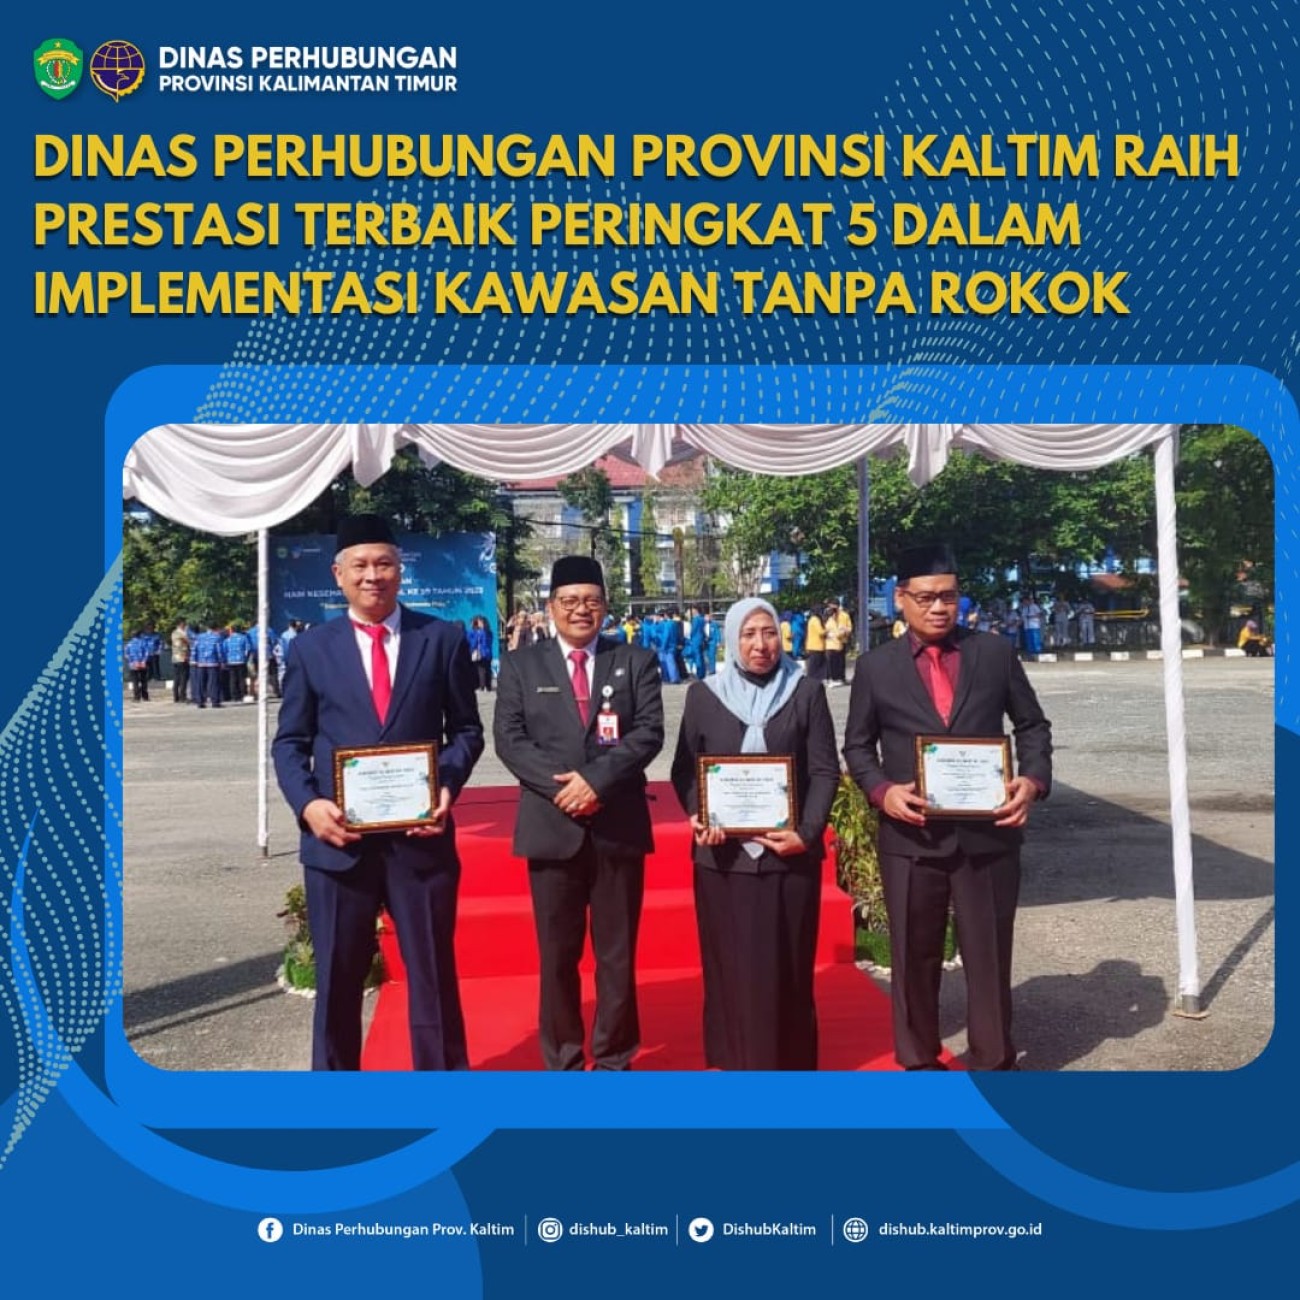 Dinas Perhubungan Provinsi Kalimantan Timur (Kaltim) meraih prestasi terbaik peringkat 5 dalam penilaian Implementasi Kawasan Tanpa Rokok (KTR) pada OPD Tingkat Provinsi Kalimantan Timur 2023